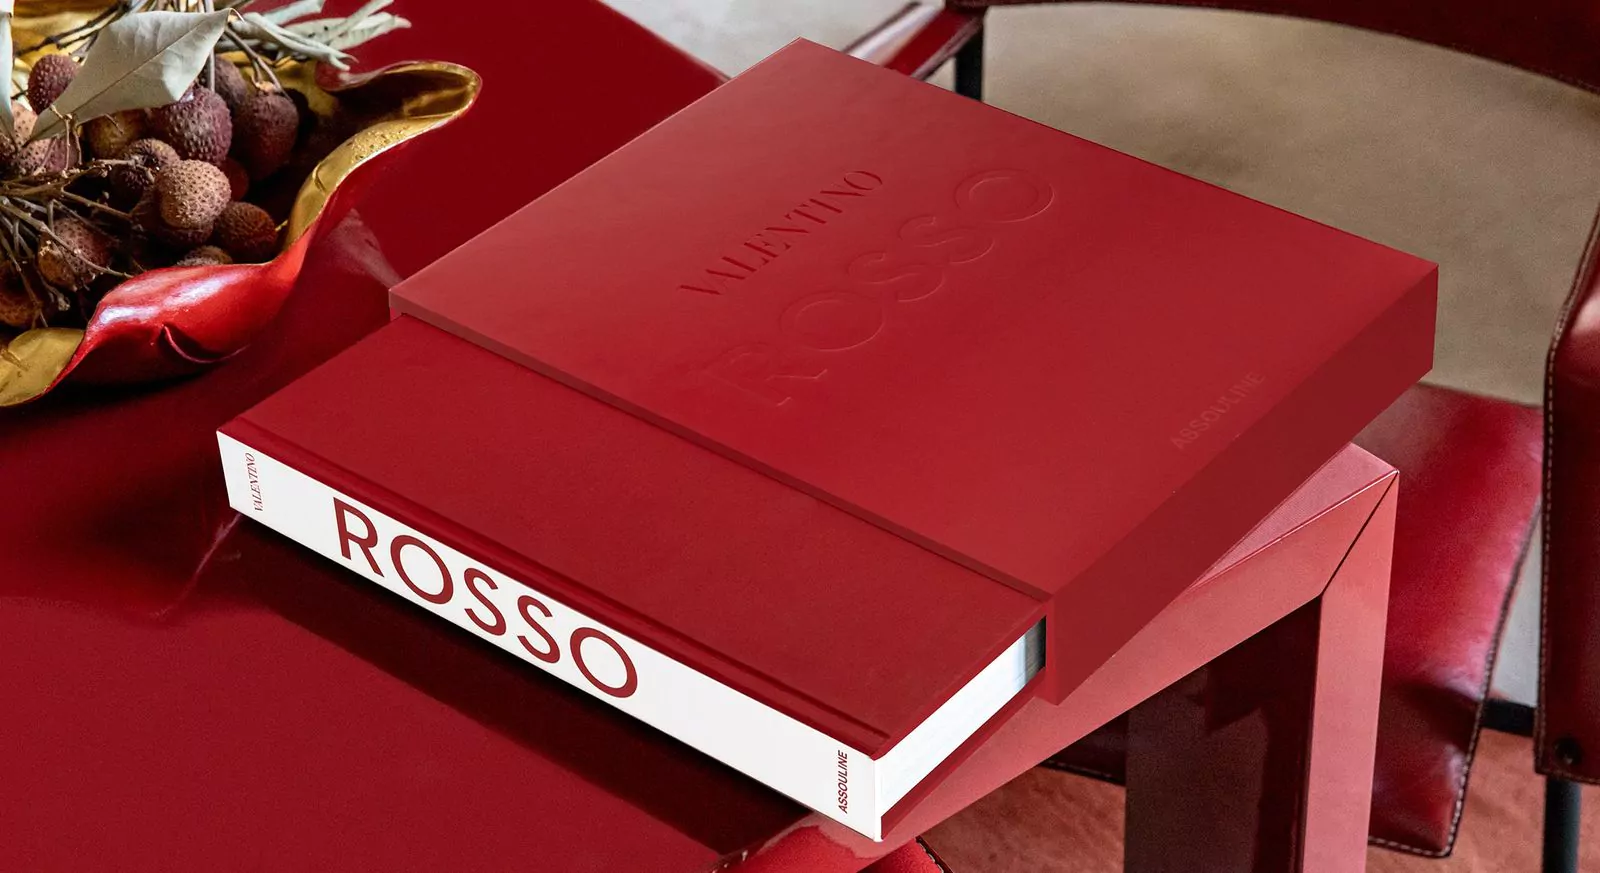 Альбом «Valentino Rosso» вышел в издательстве Assouline, фото 1